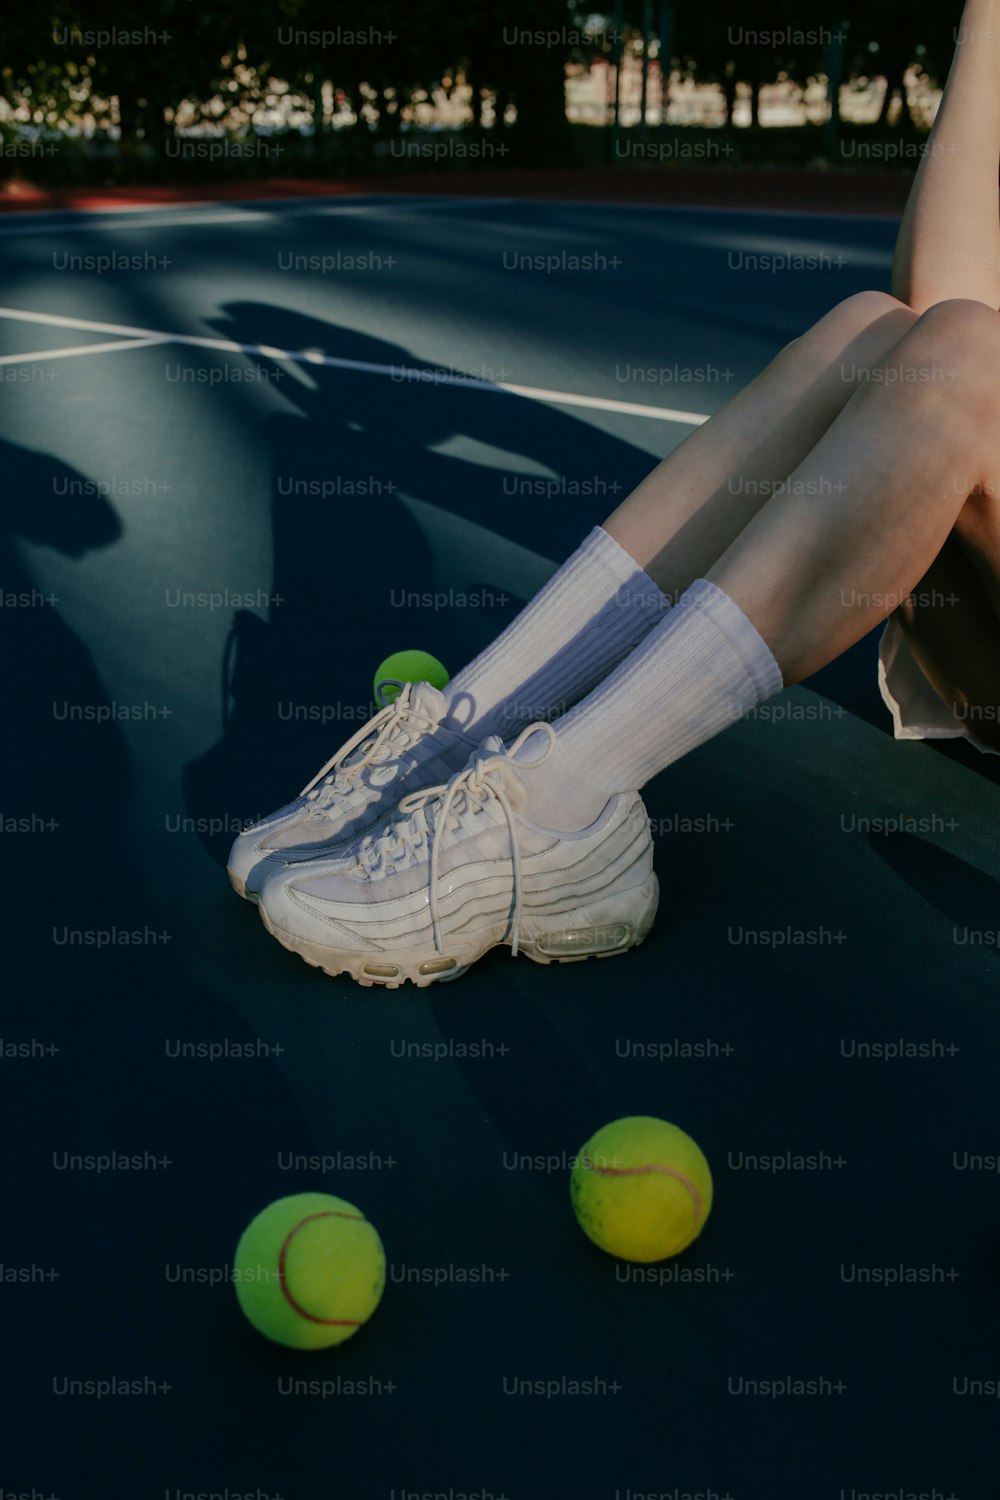 테니스 공을 들고 테니스 코트에 앉아있는 사람